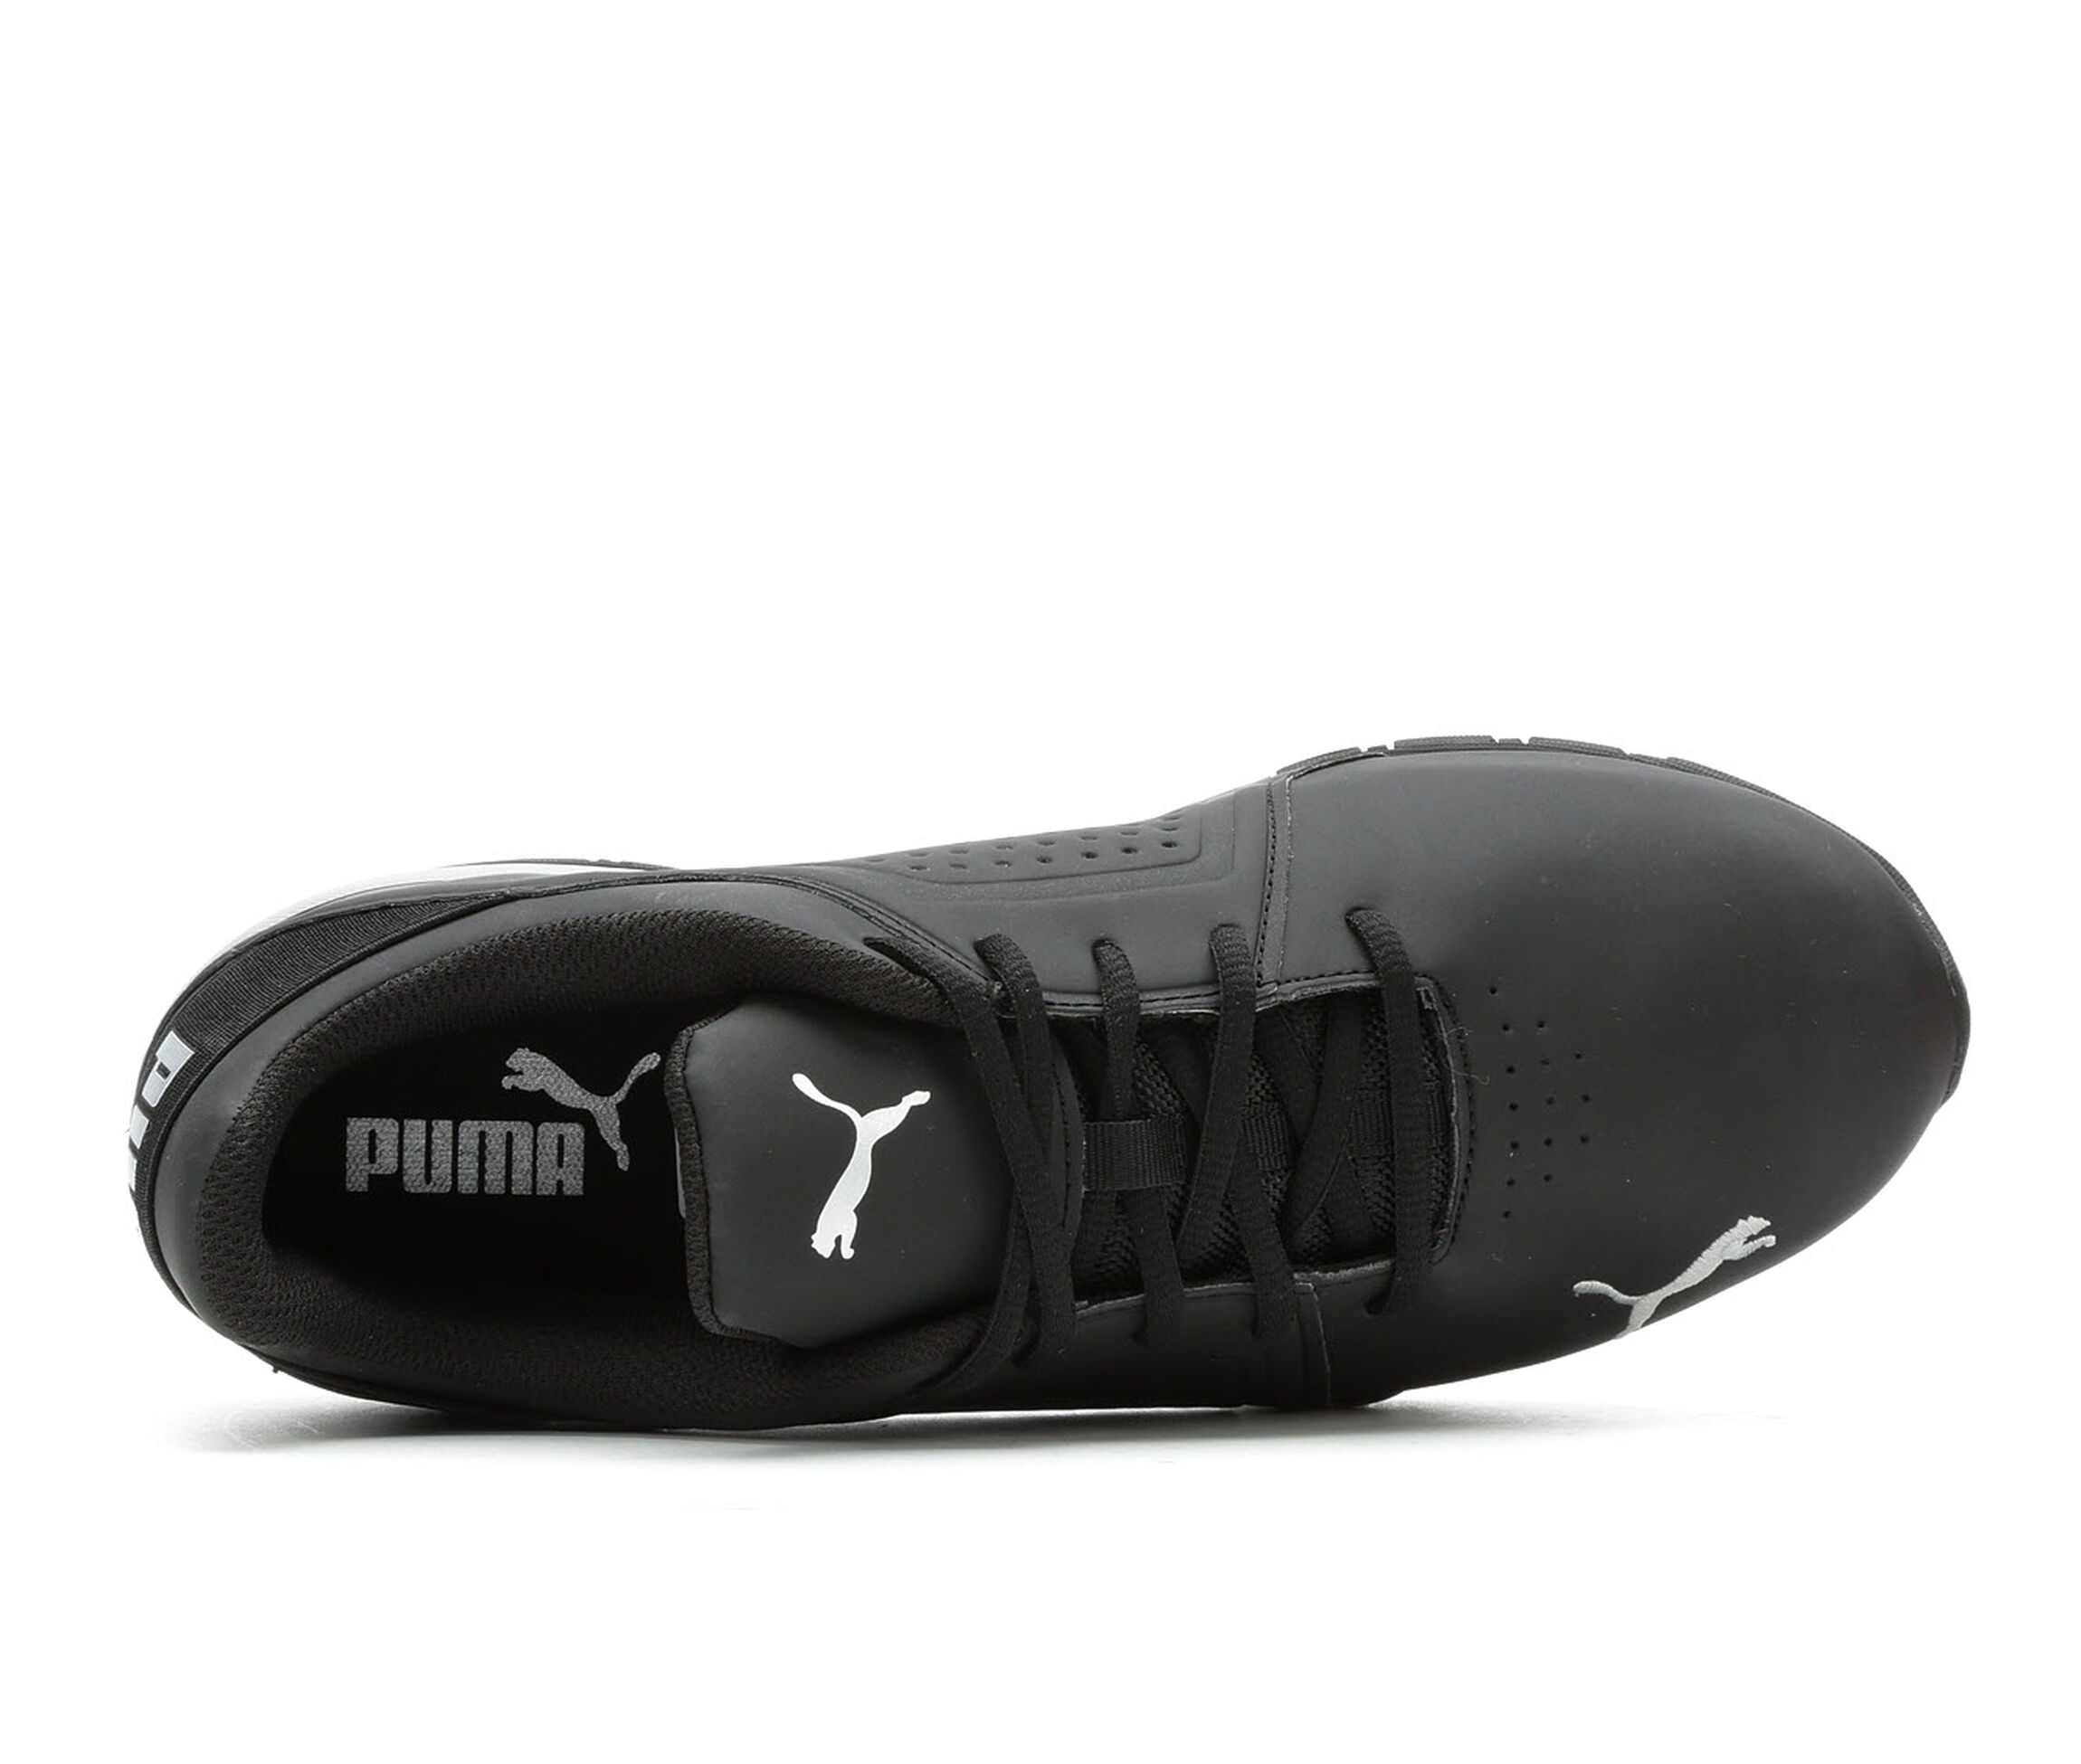 Men's Puma Shoes | Latest Puma Shoes for Men | Shoe Carnival